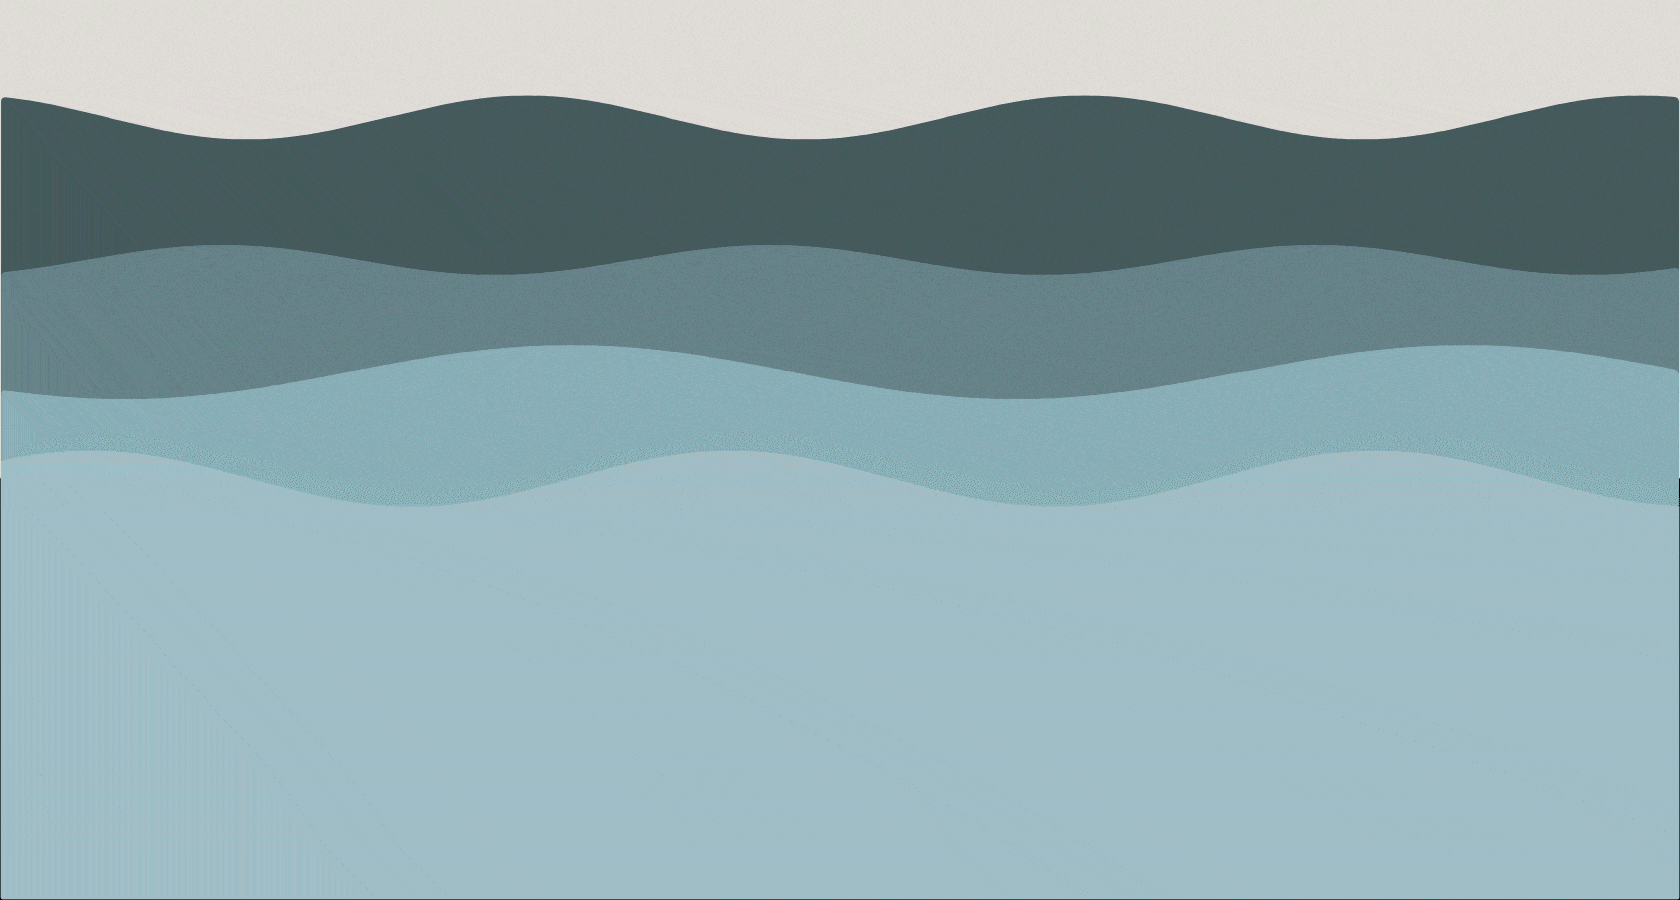 GIFs de ondas do mar